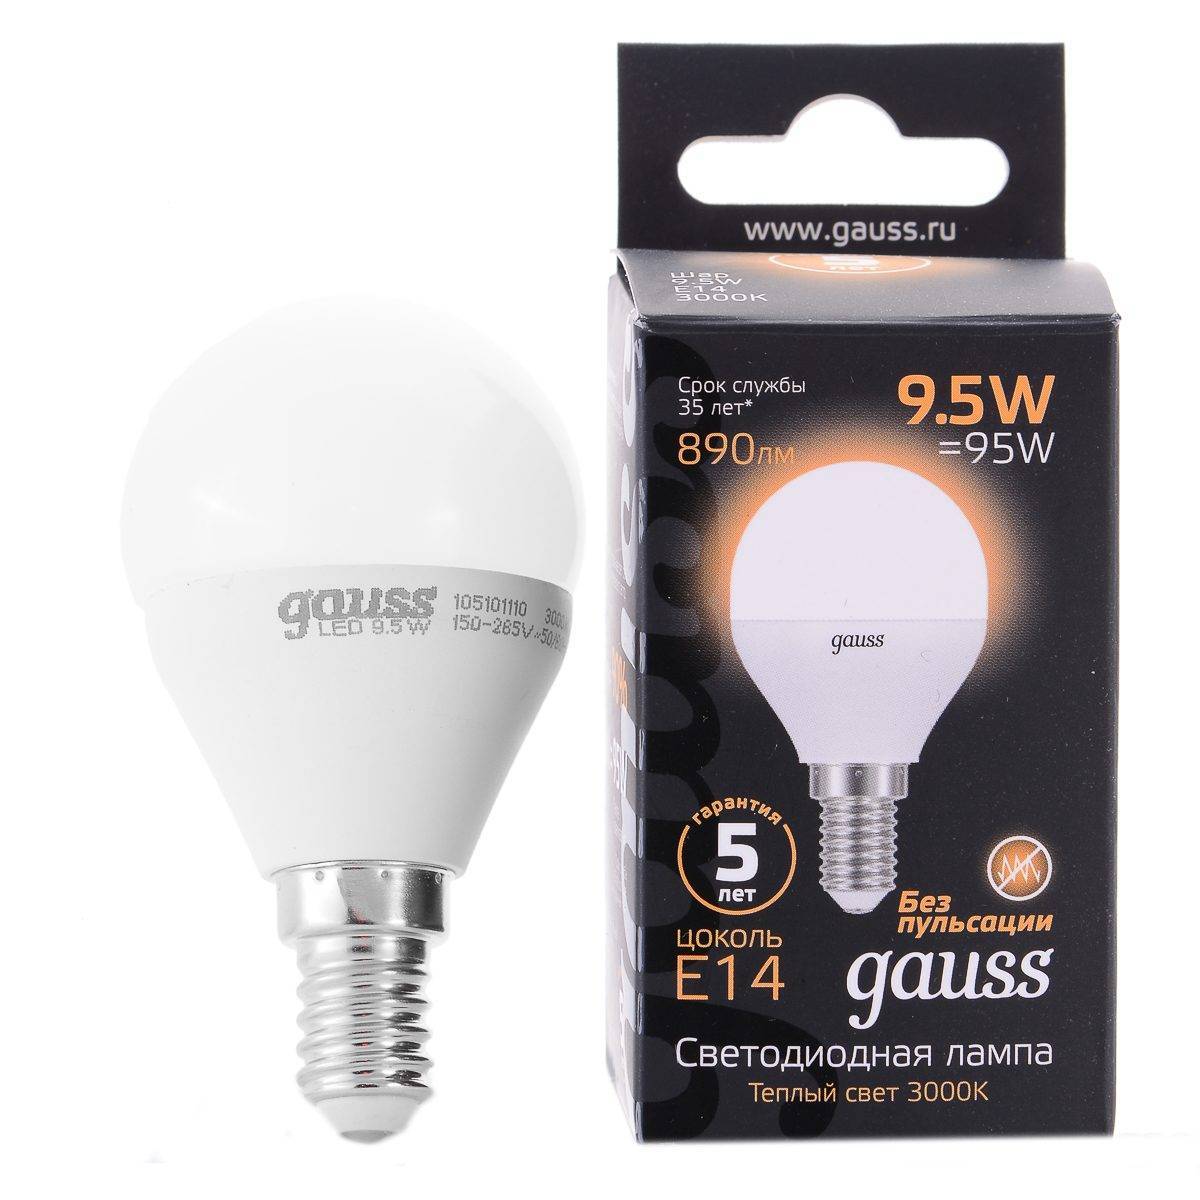 Светодиодные лампы gauss: специфика устройства и советы по выбору - точка j